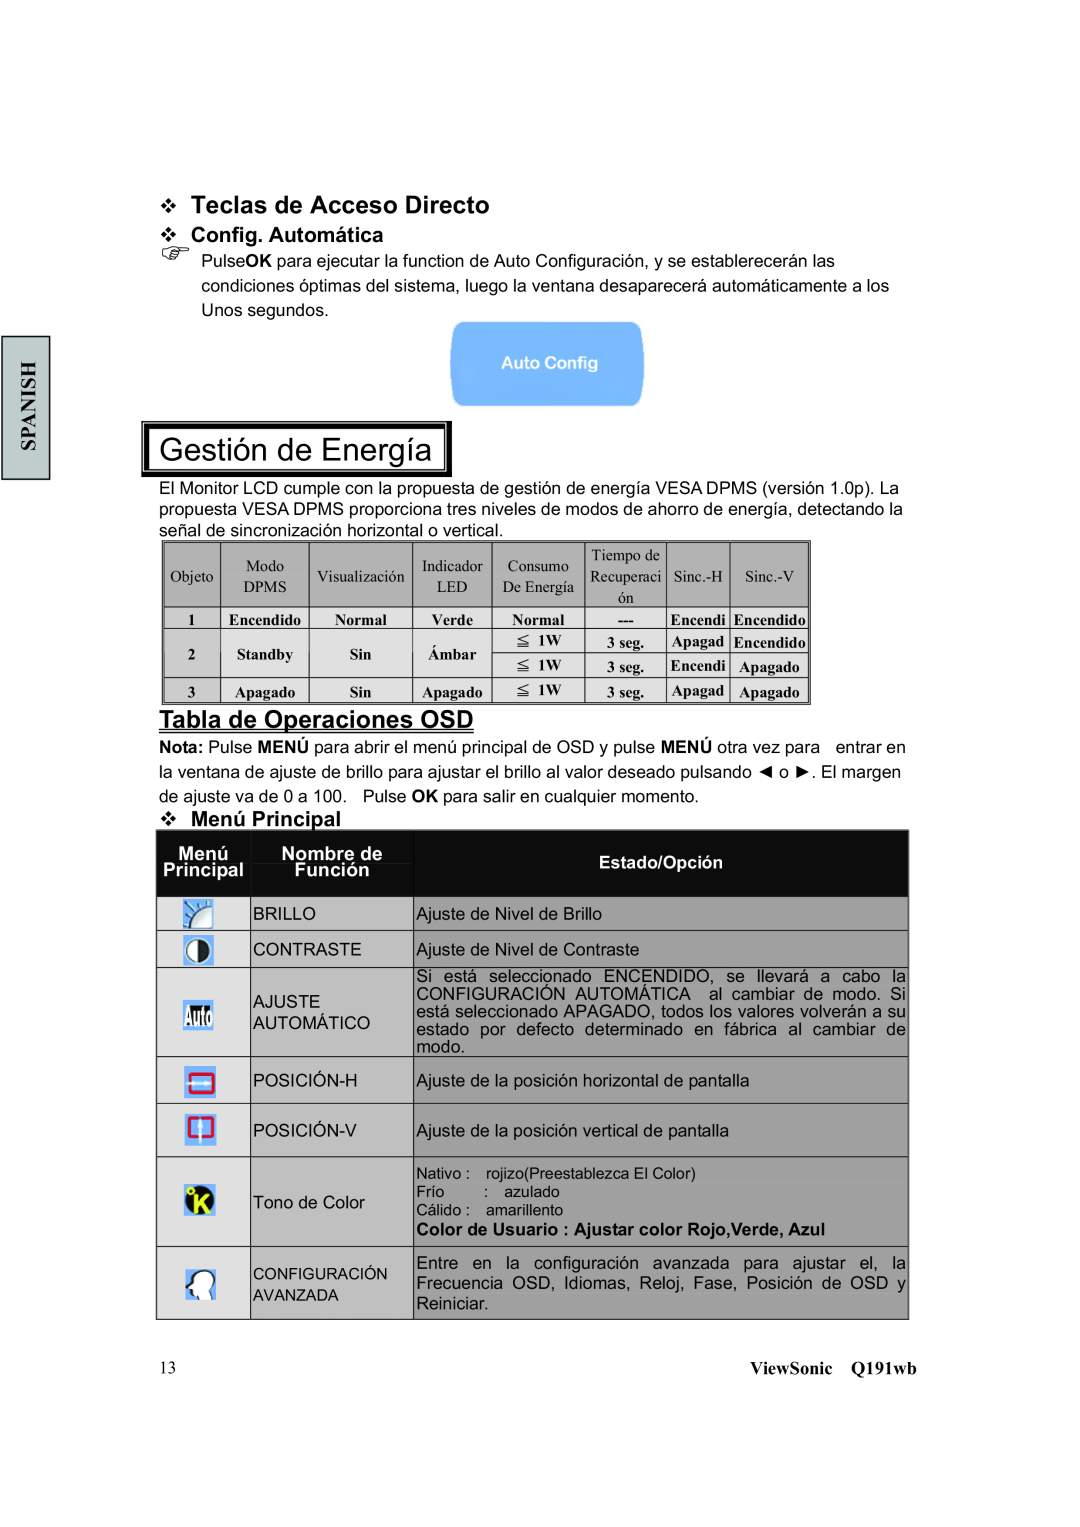 ViewSonic Q191WB Tabla de Operaciones OSD, ™ Teclas de Acceso Directo ™ Config. Automática, ™ Menú Principal, Spanish 